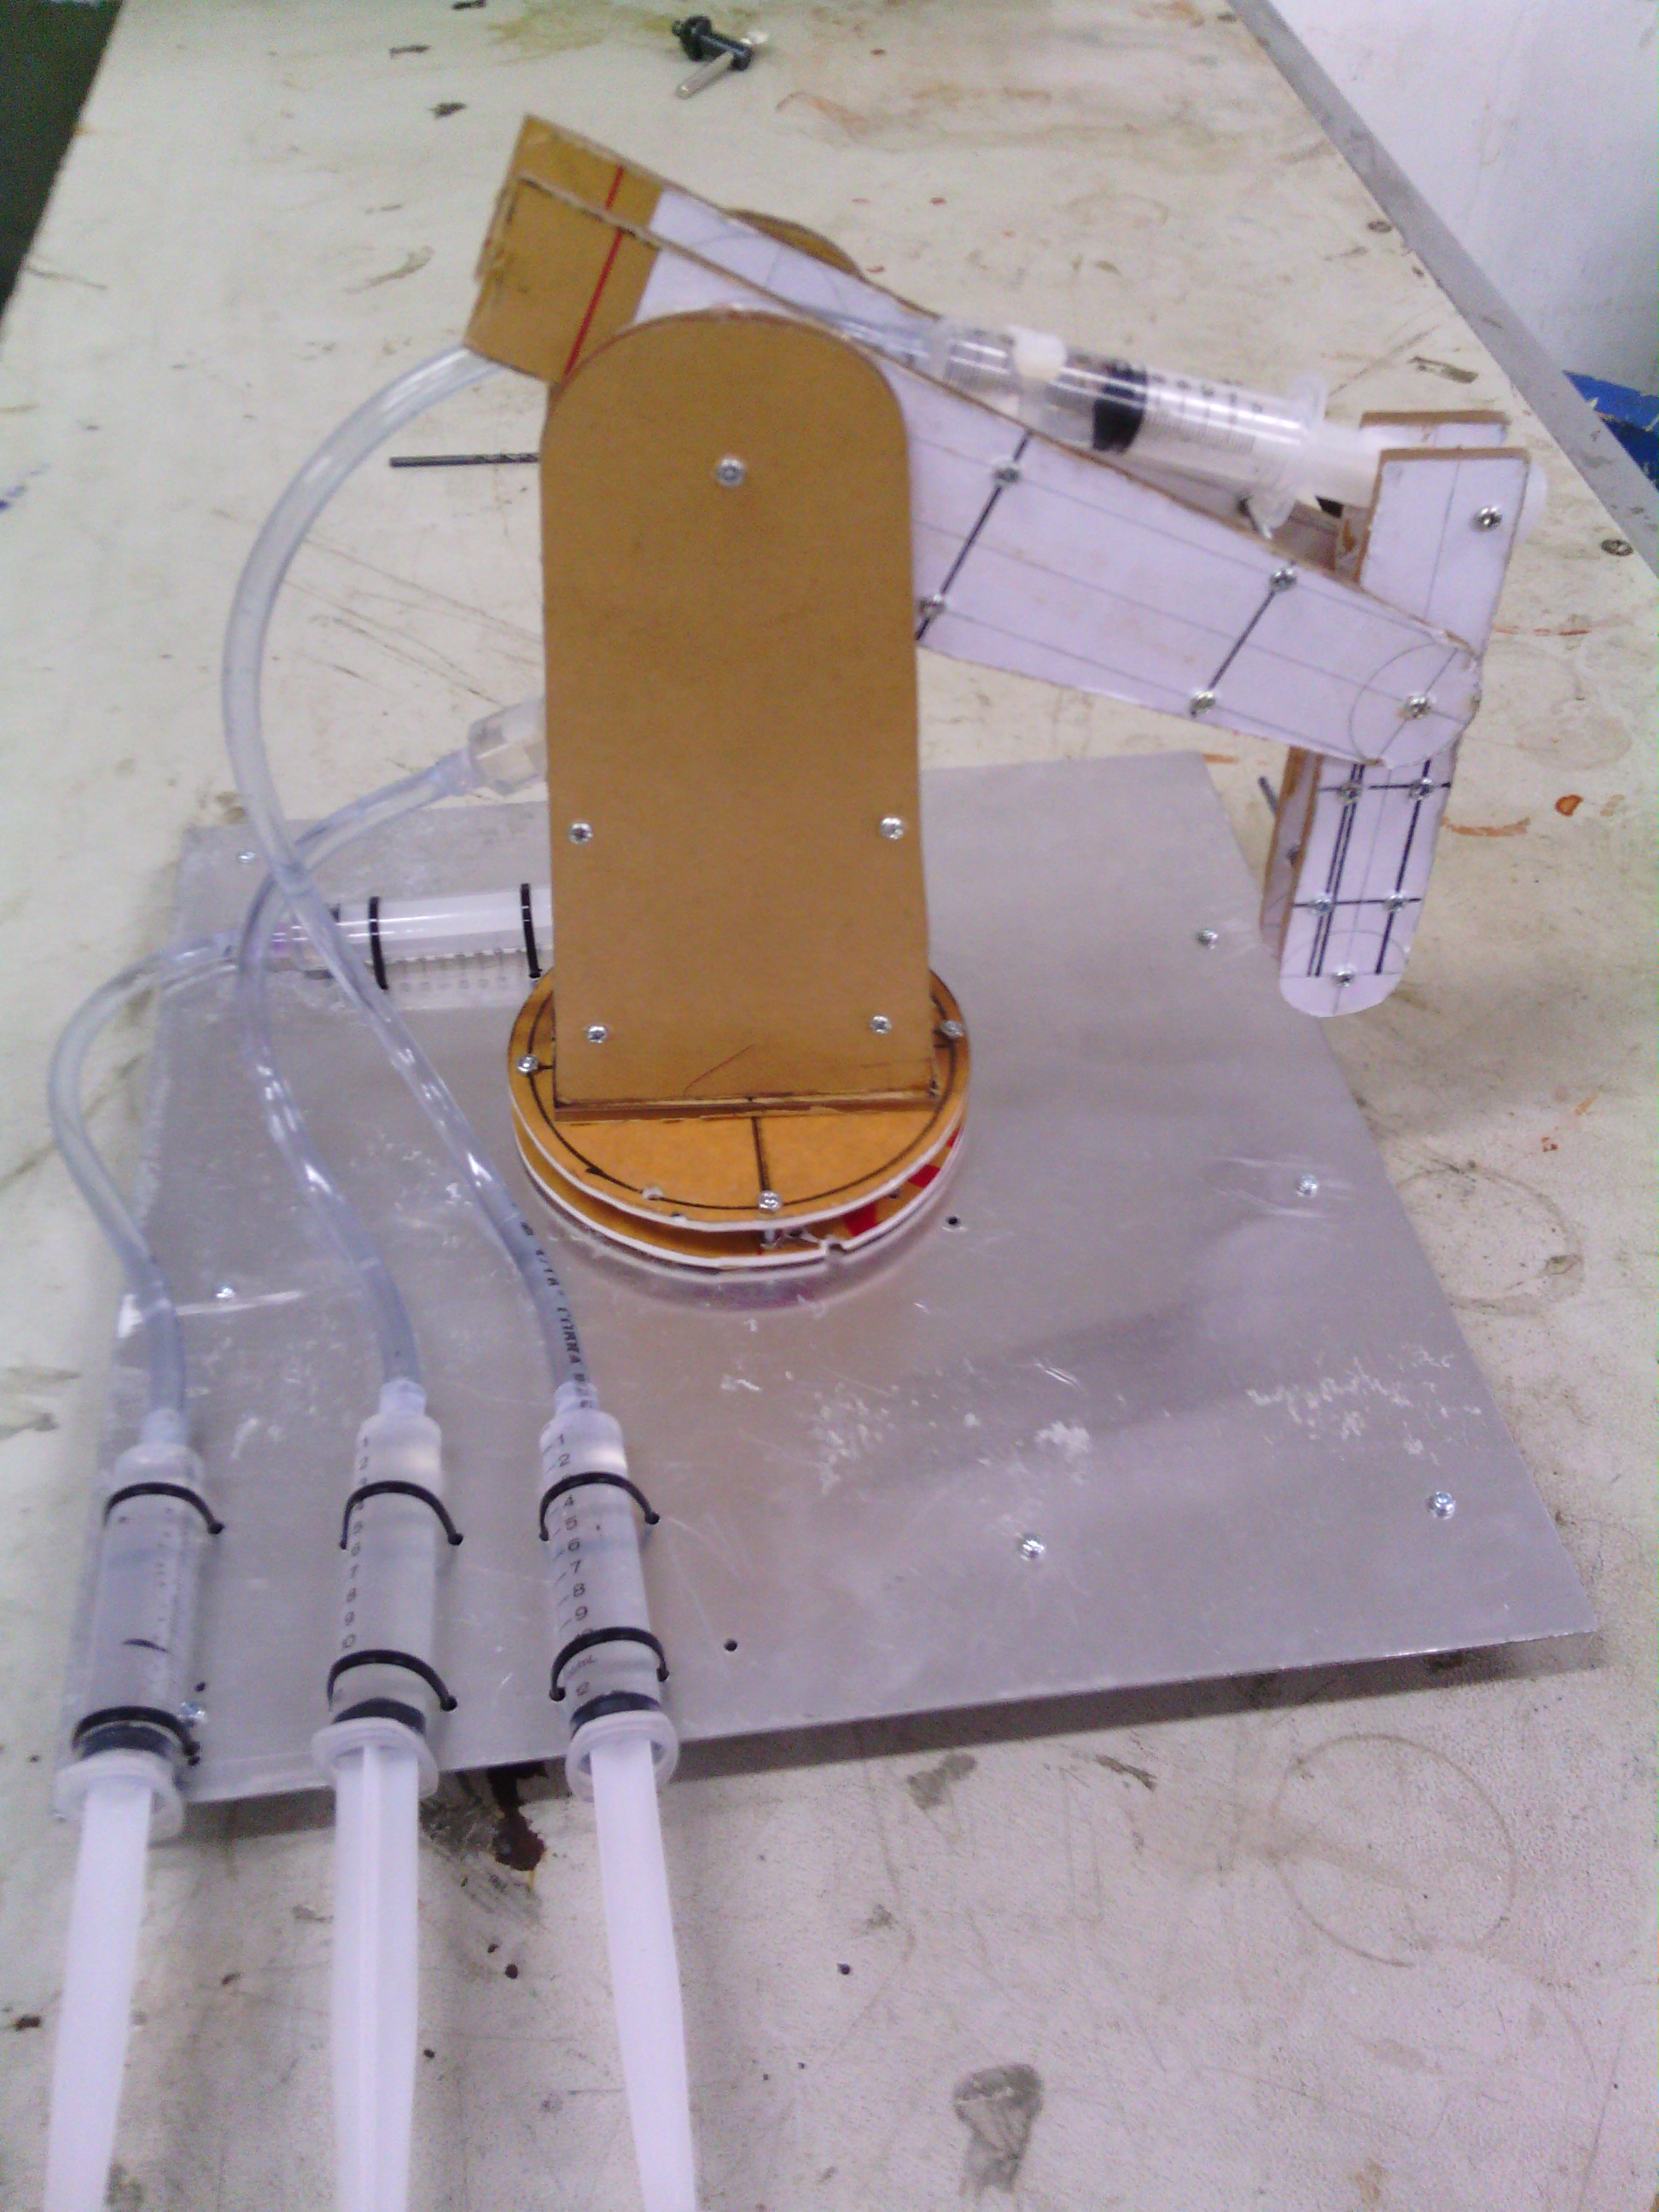 Membuat Lengan Robot Hidrolik Sederhana Utakatikmikros Blog